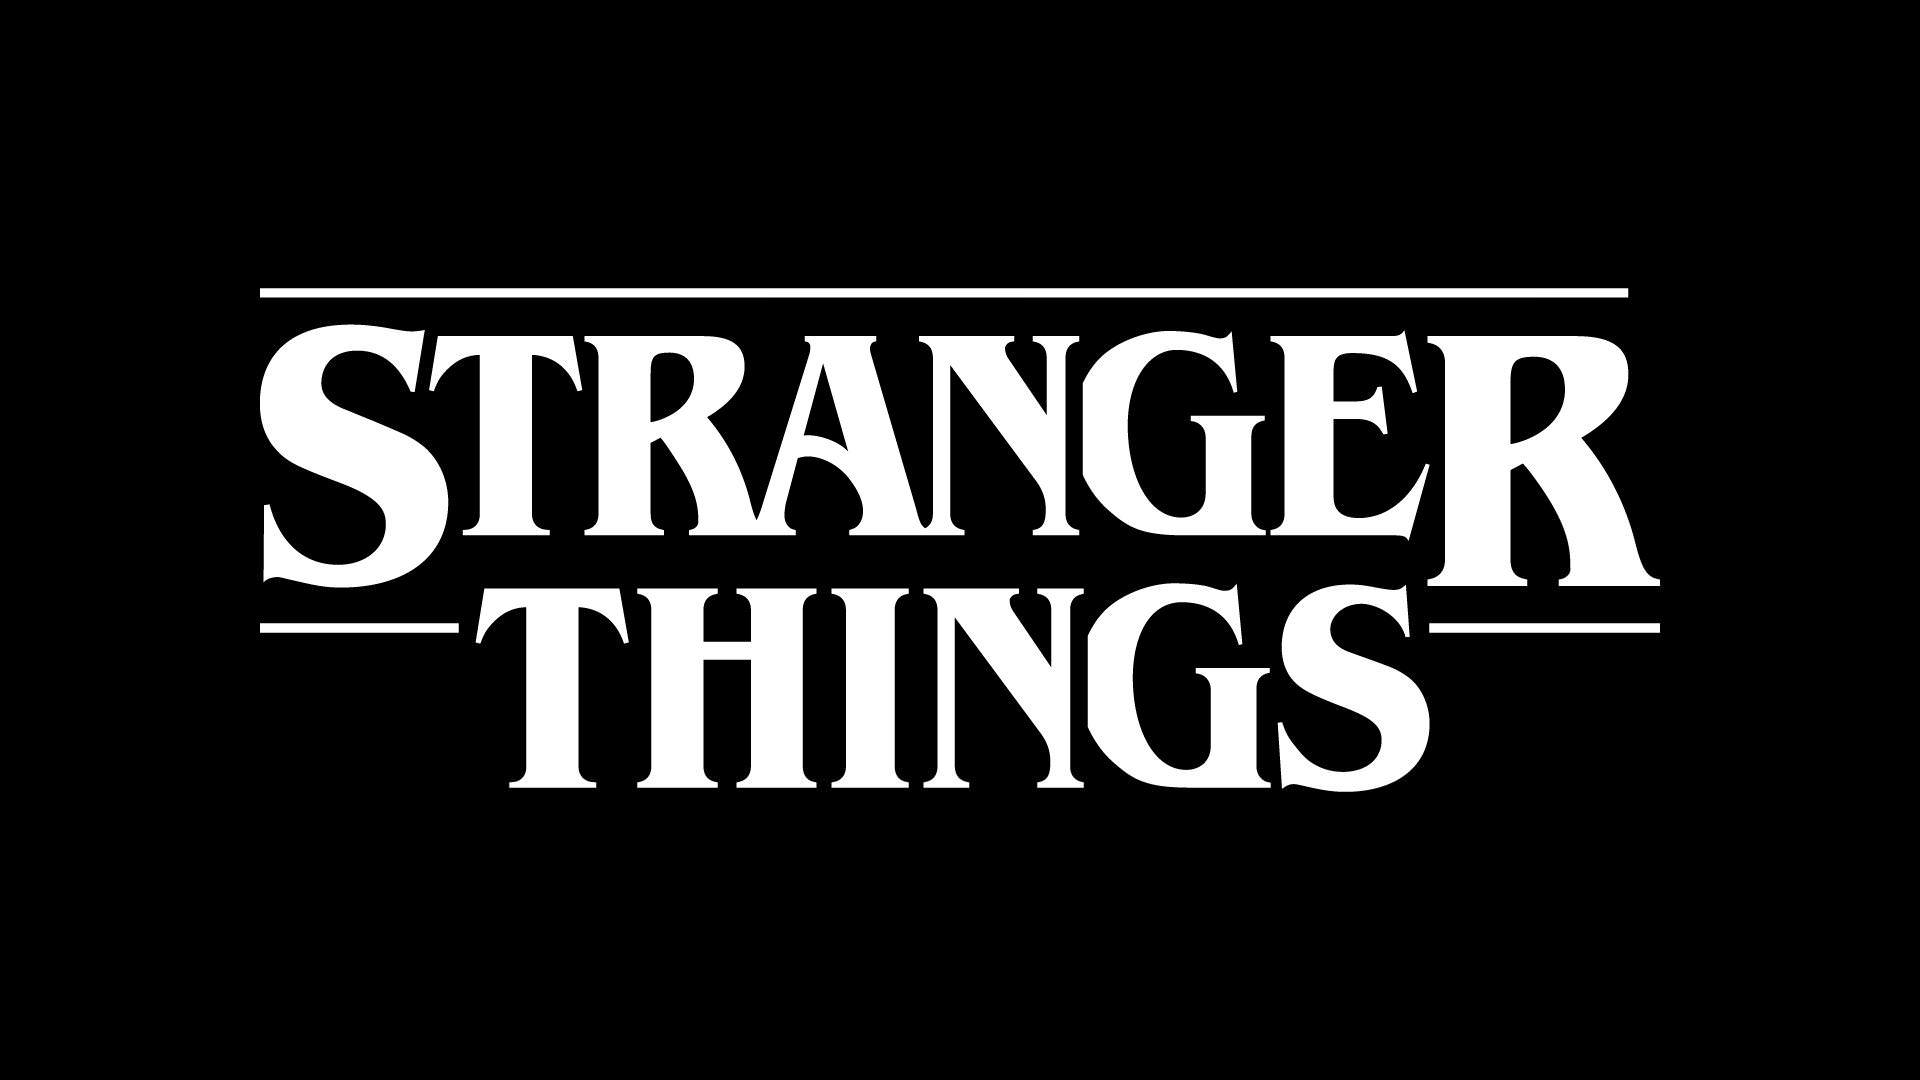 Stranger Things Title Generator  Stranger things aesthetic Stranger things  poster Stranger things wallpaper